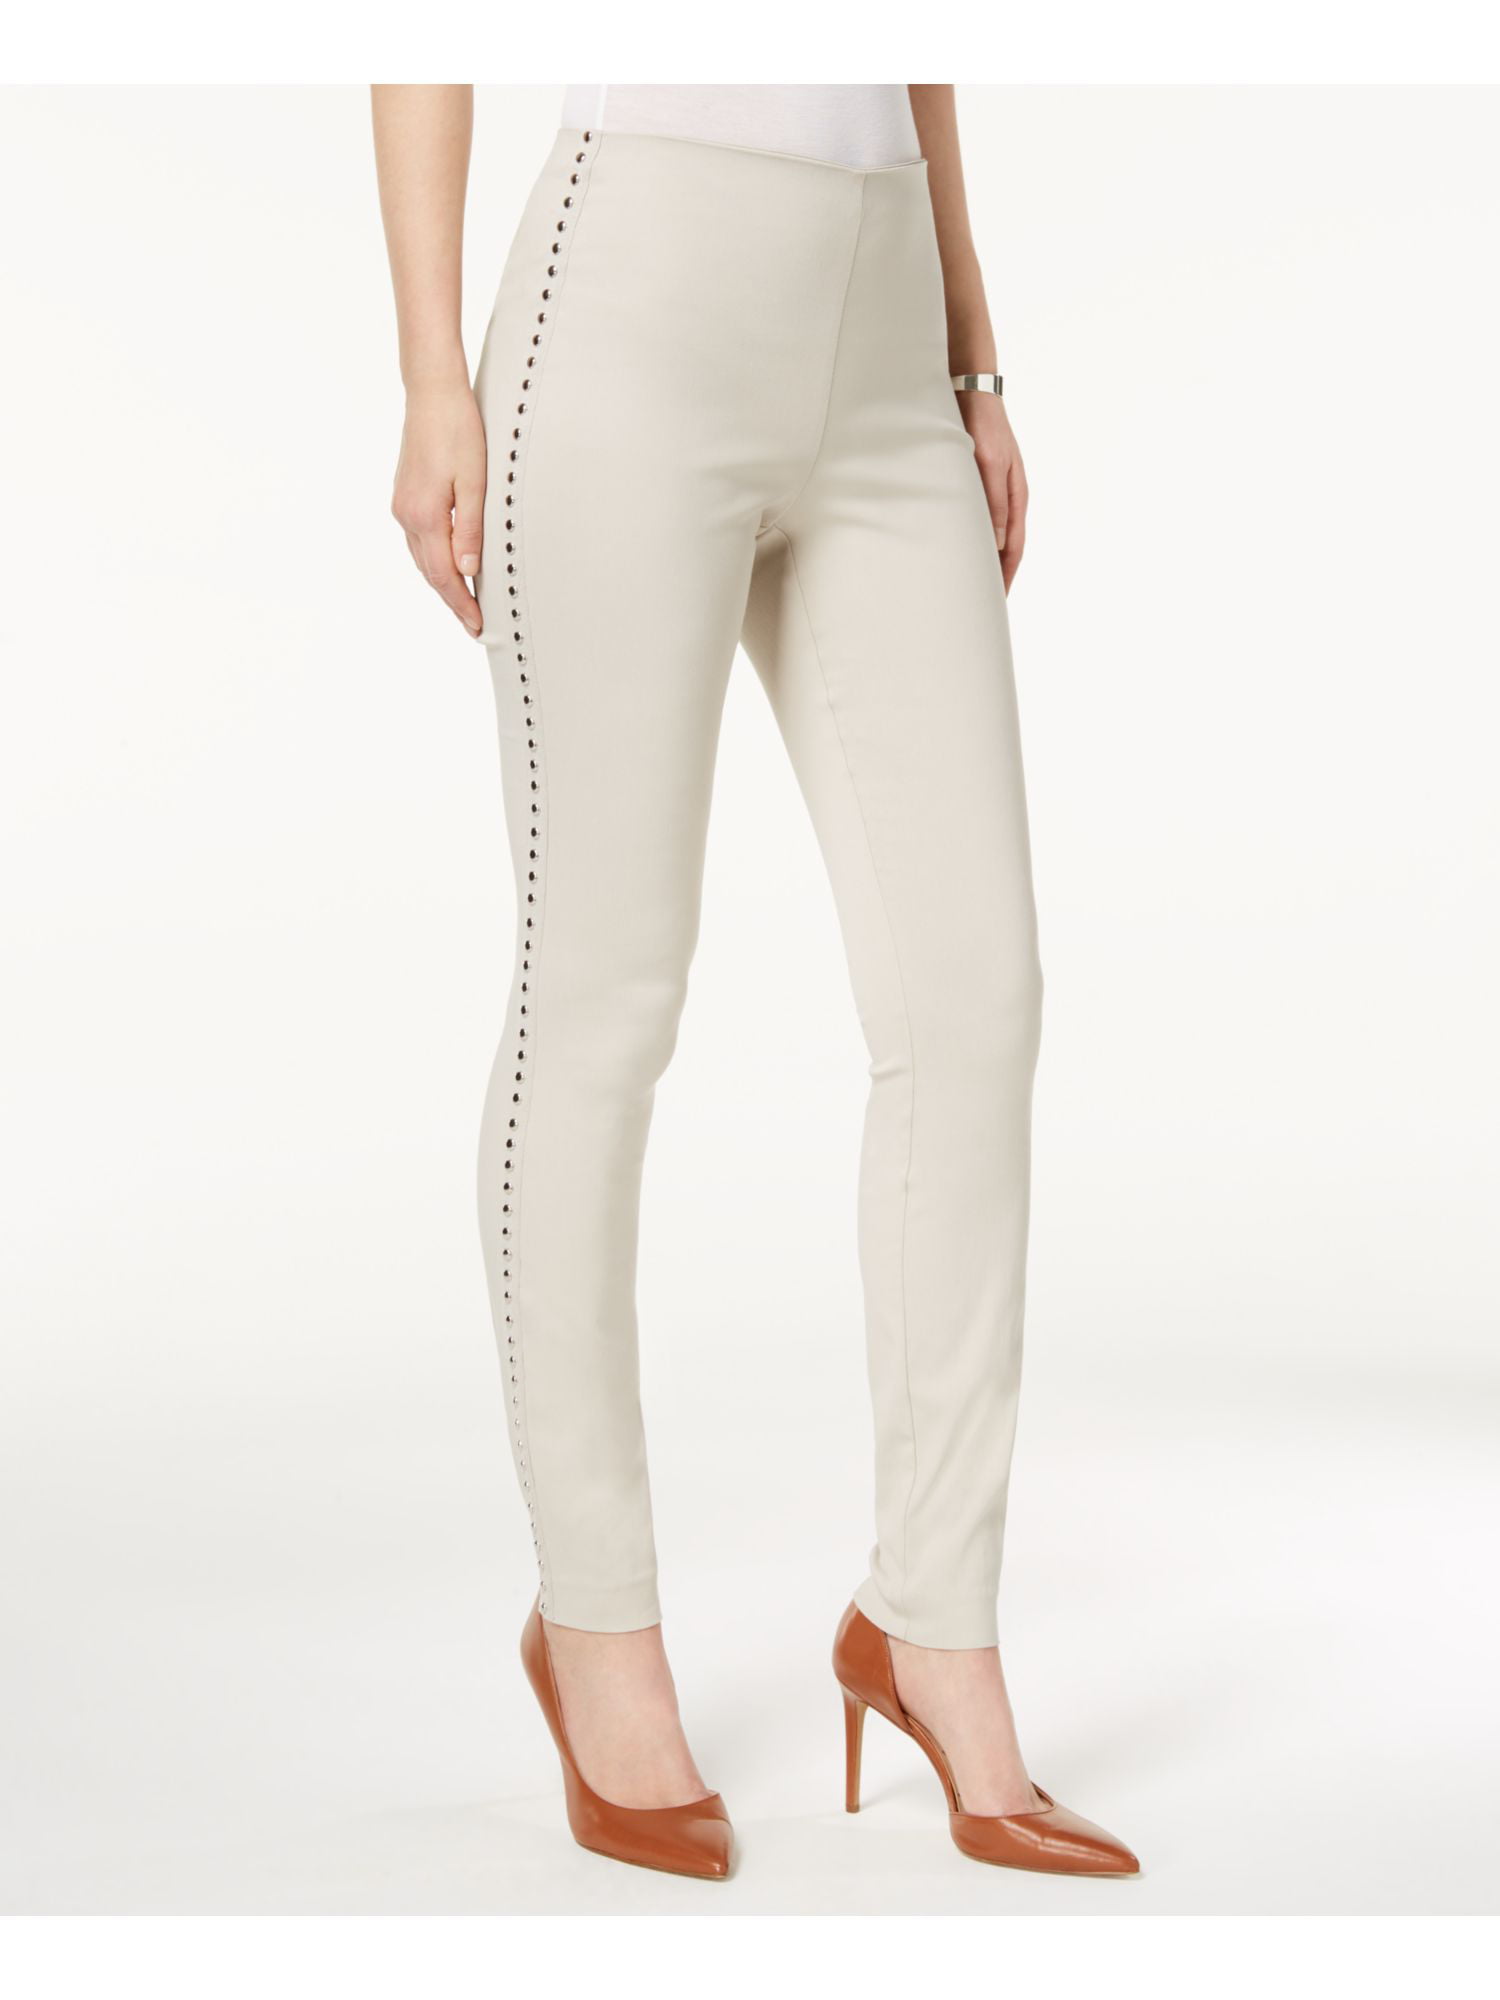 Studded Pants Curvy New Beige INC B+B On $69 1091 6 Skinny Fit Pull Womens